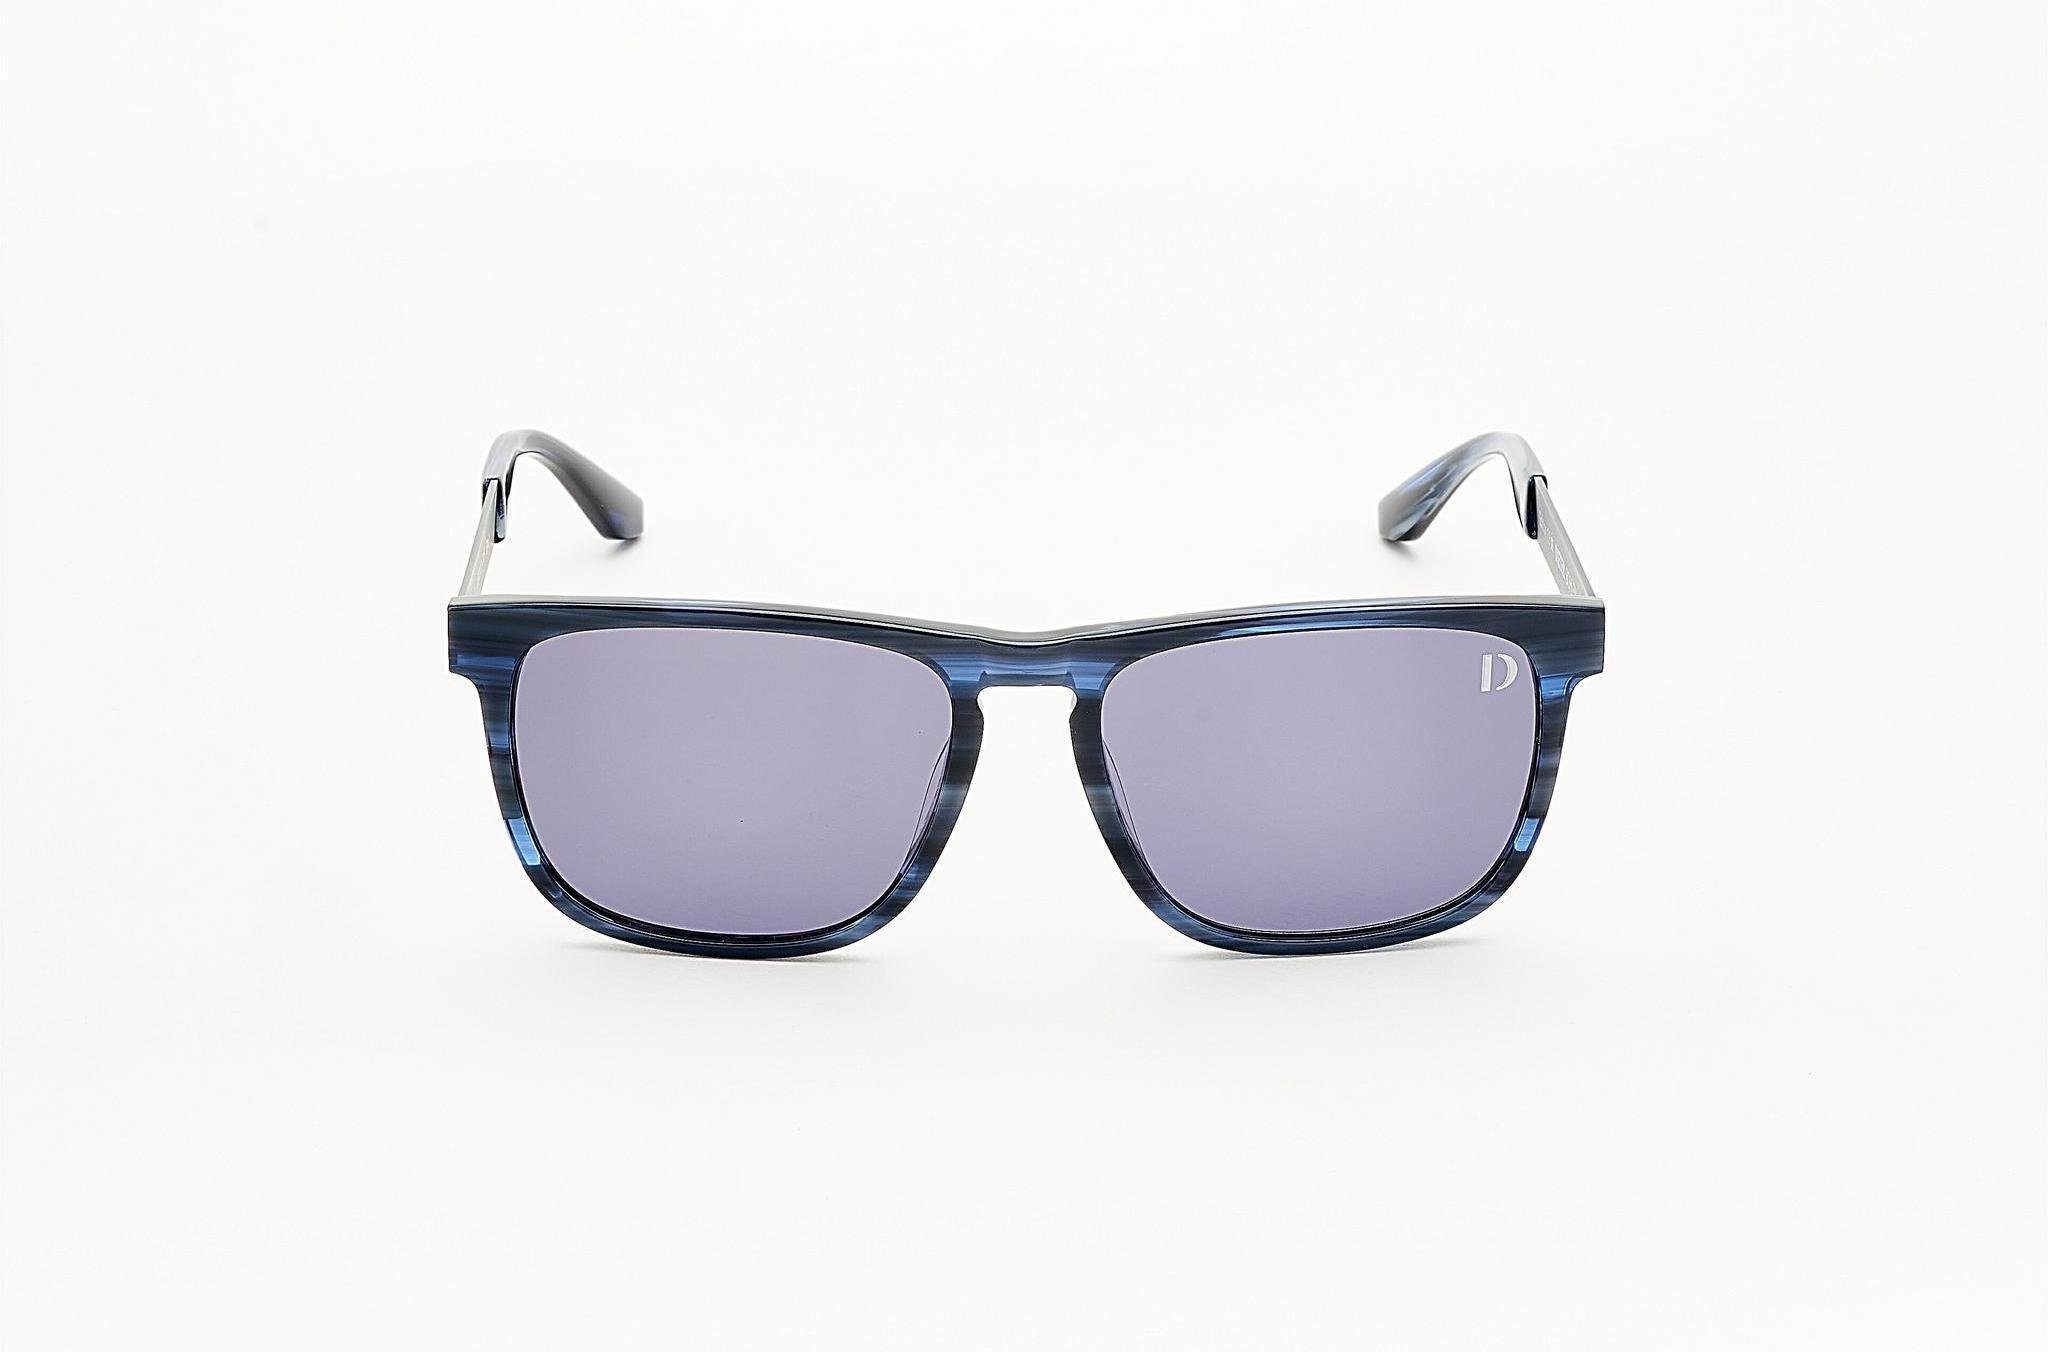 Dieter Bohlen 1 Sonnenbrille EDITION blau